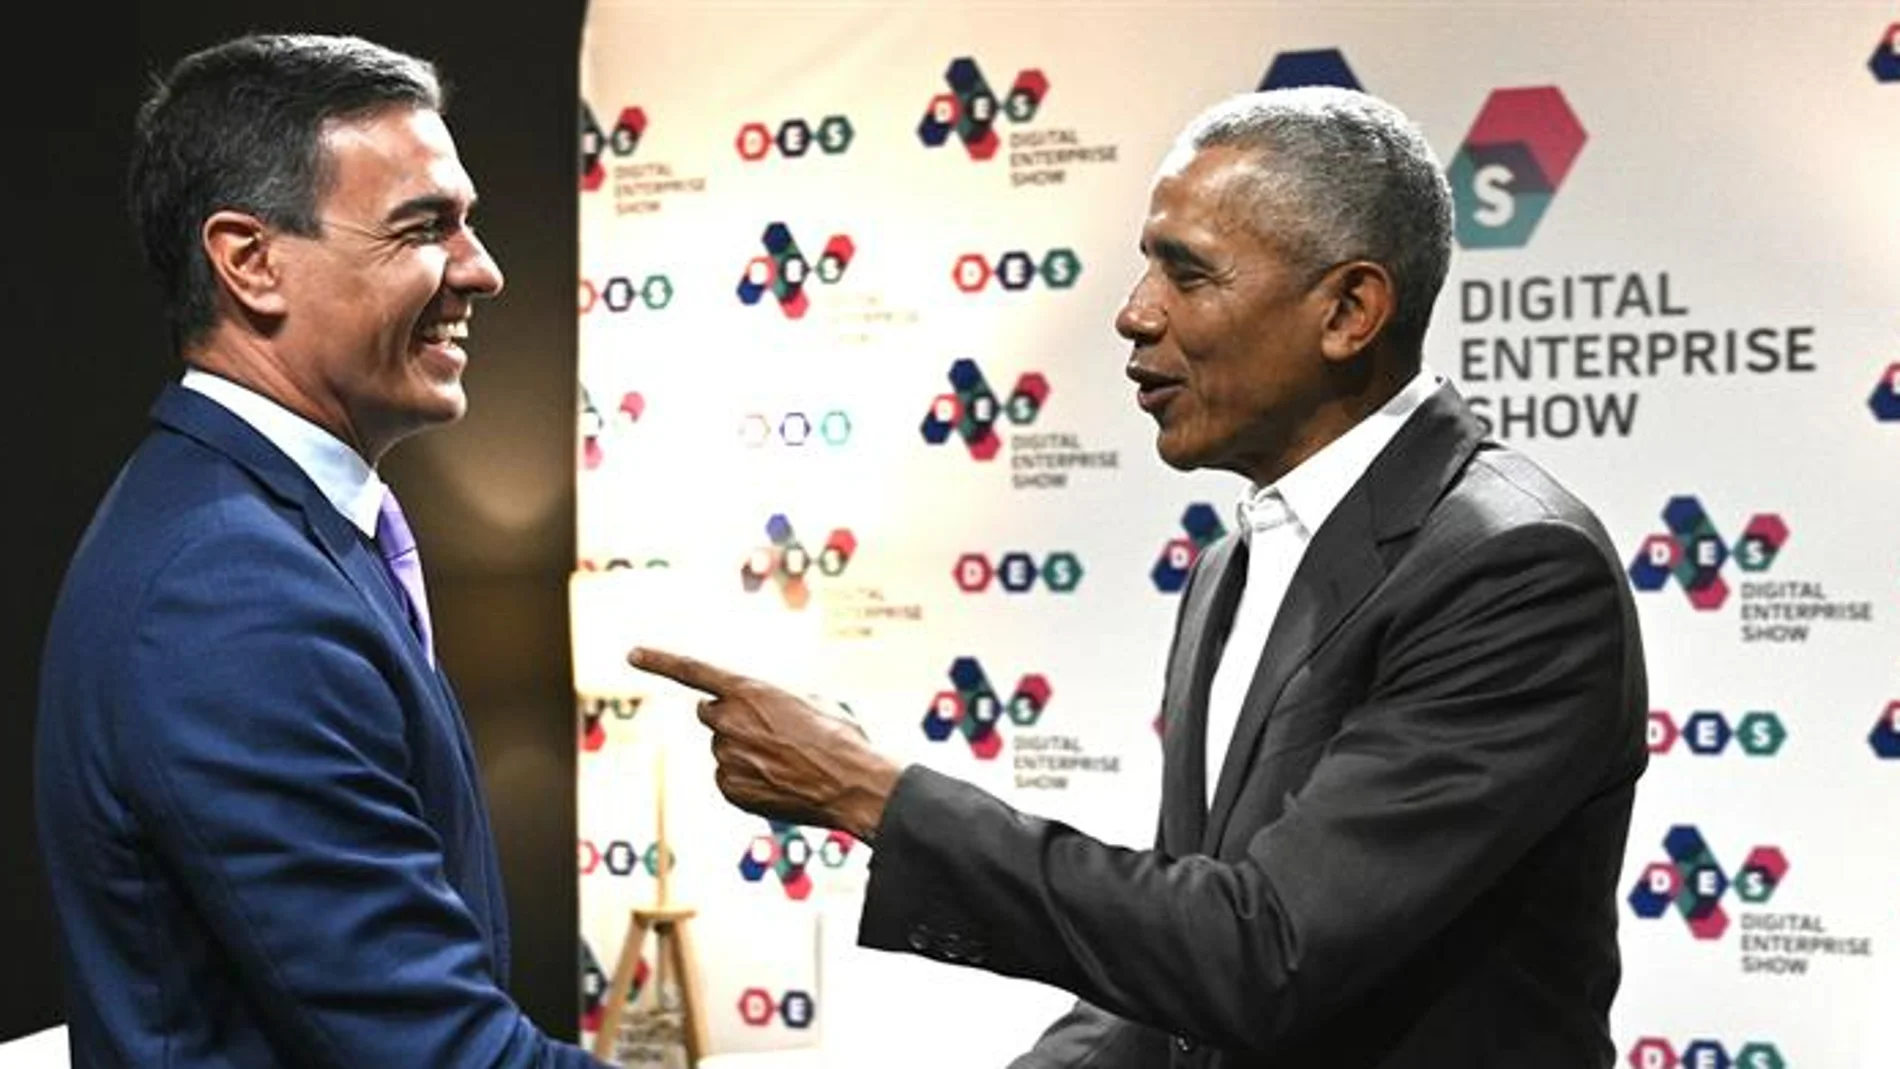 Pedro Sánchez y Barack Obama se encuentran en Málaga